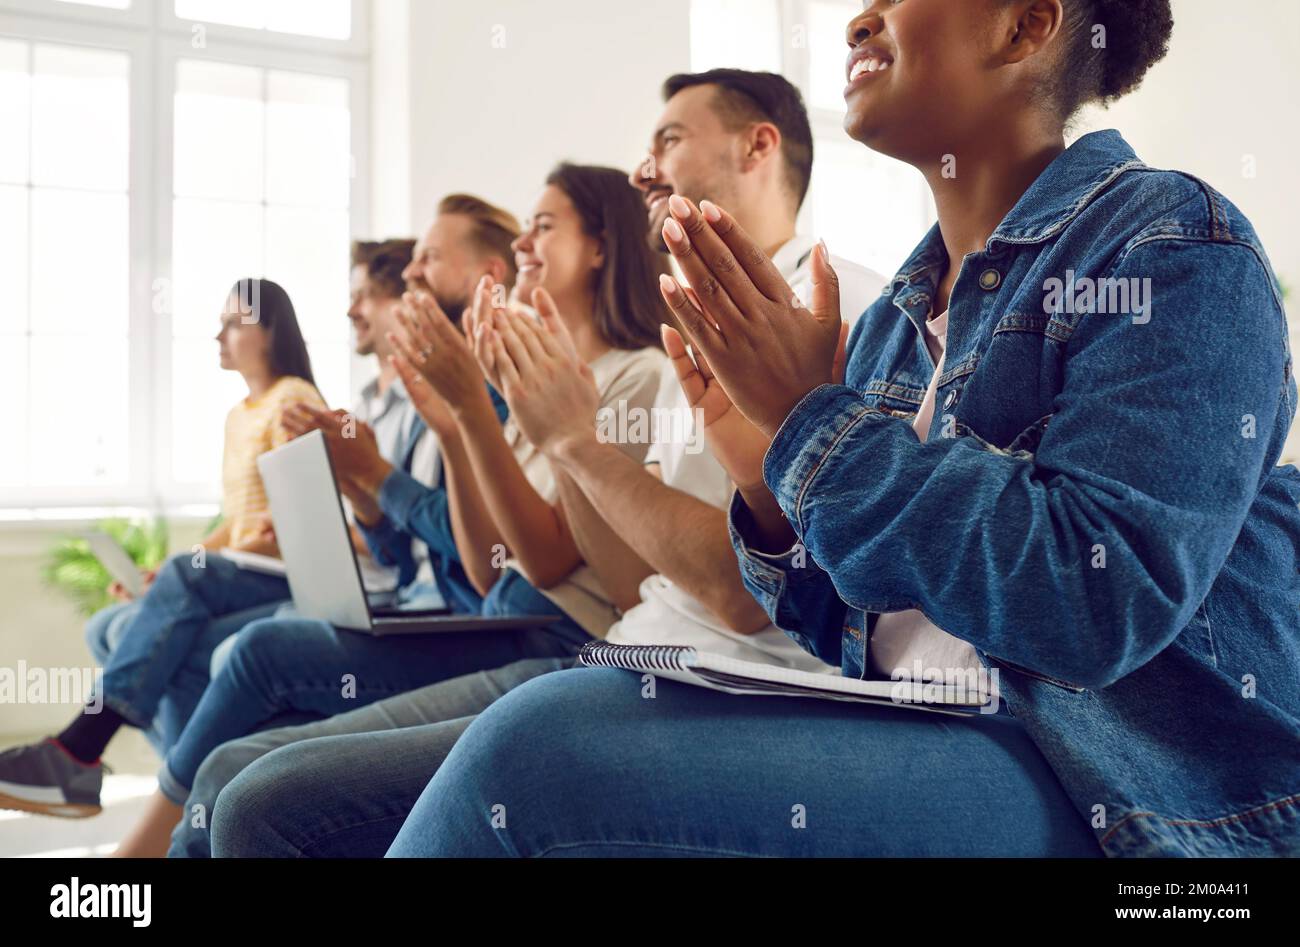 Satisfait divers auditoire d'étudiants ou de travailleurs applaudissant lors d'une conférence ou d'un séminaire. Banque D'Images